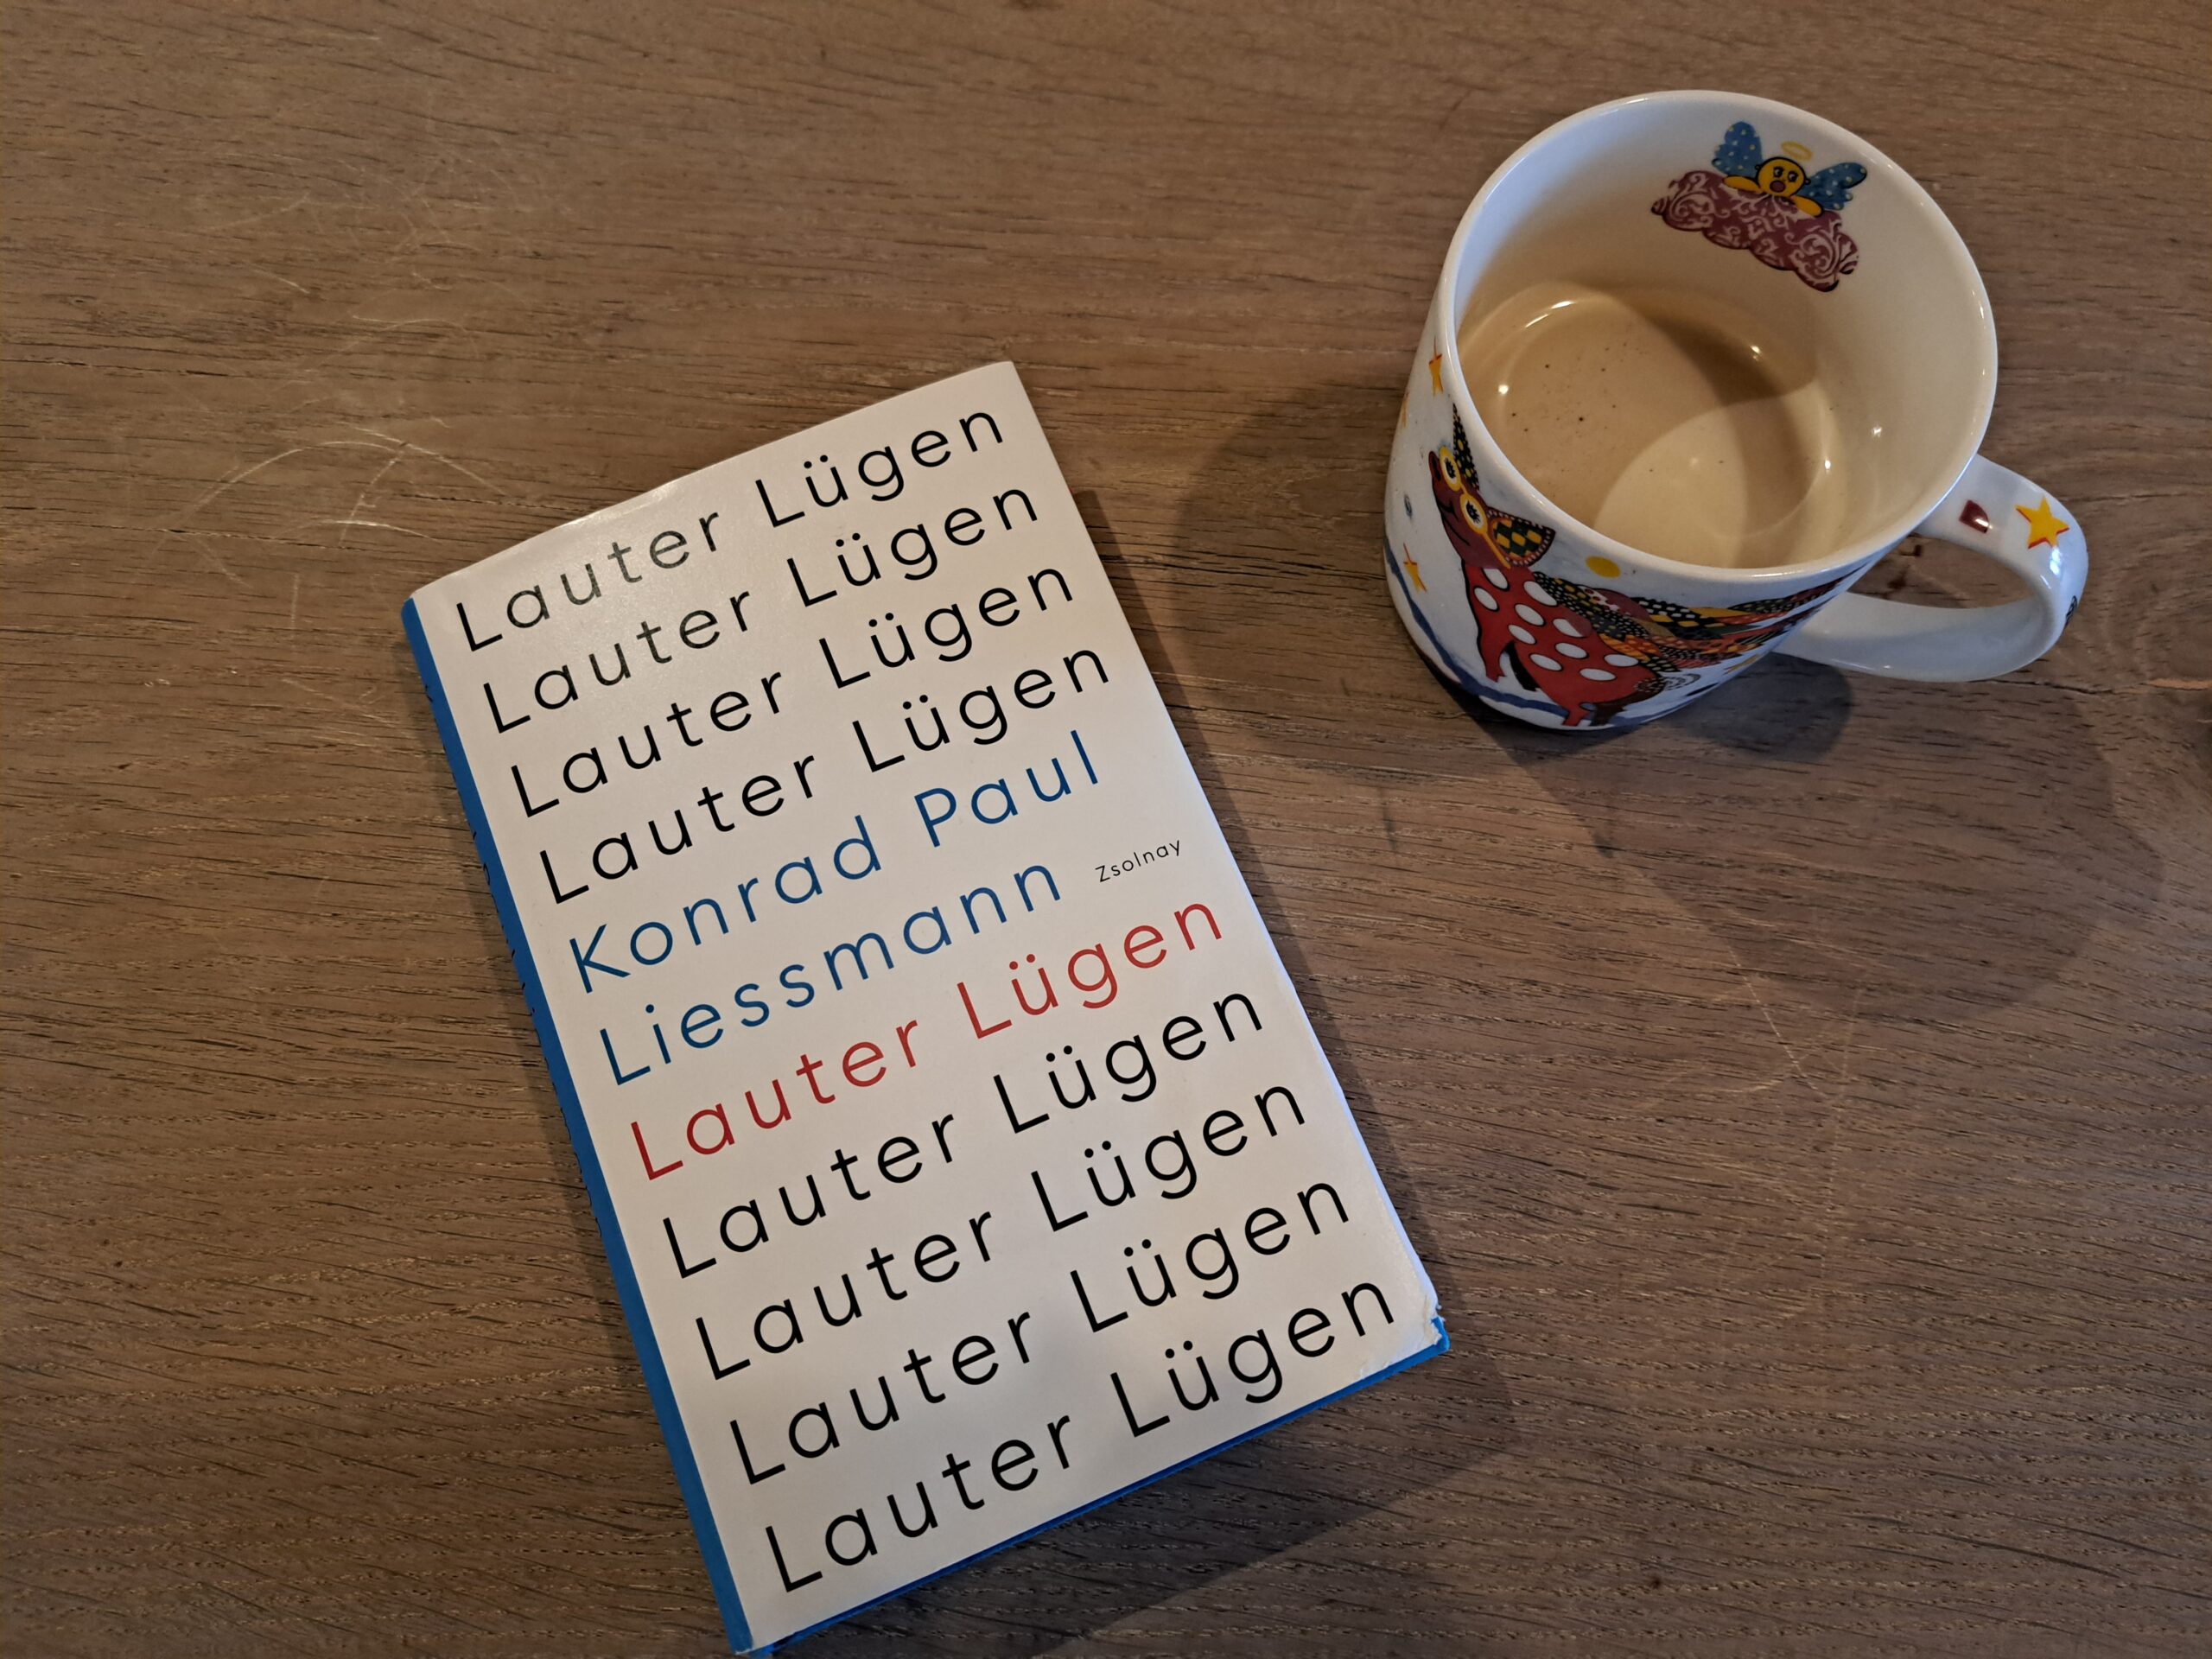 22.11.2023: Lesung und Gespräch mit  Konrad Paul Liessmann über sein neues Buch "Lauter Lügen" 